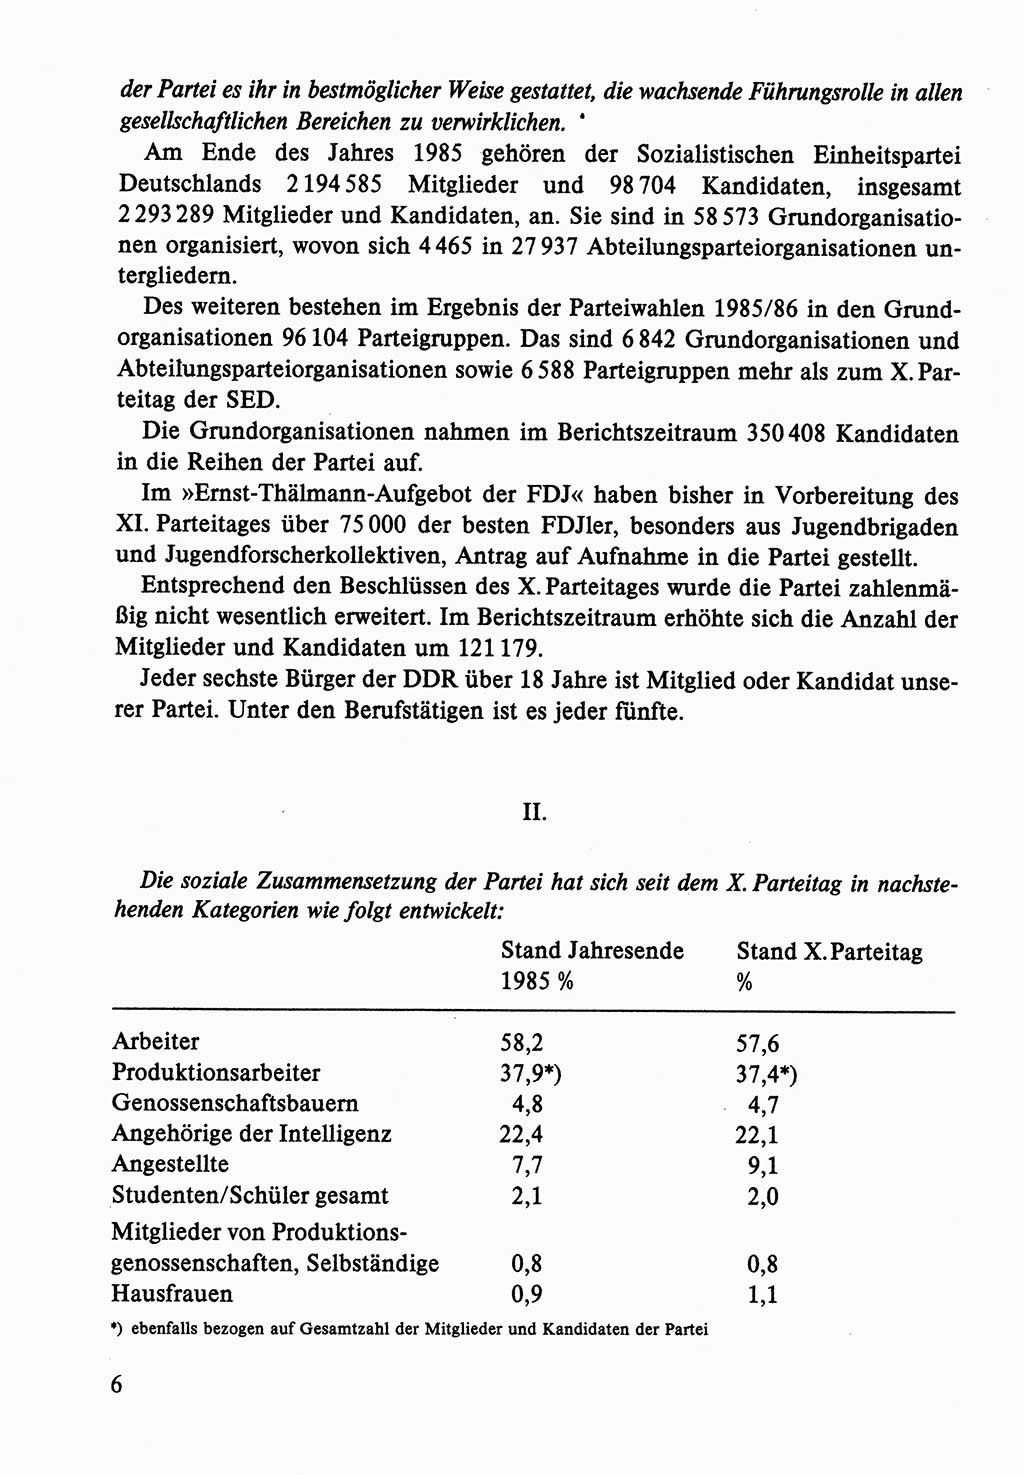 Dokumente der Sozialistischen Einheitspartei Deutschlands (SED) [Deutsche Demokratische Republik (DDR)] 1986-1987, Seite 6 (Dok. SED DDR 1986-1987, S. 6)